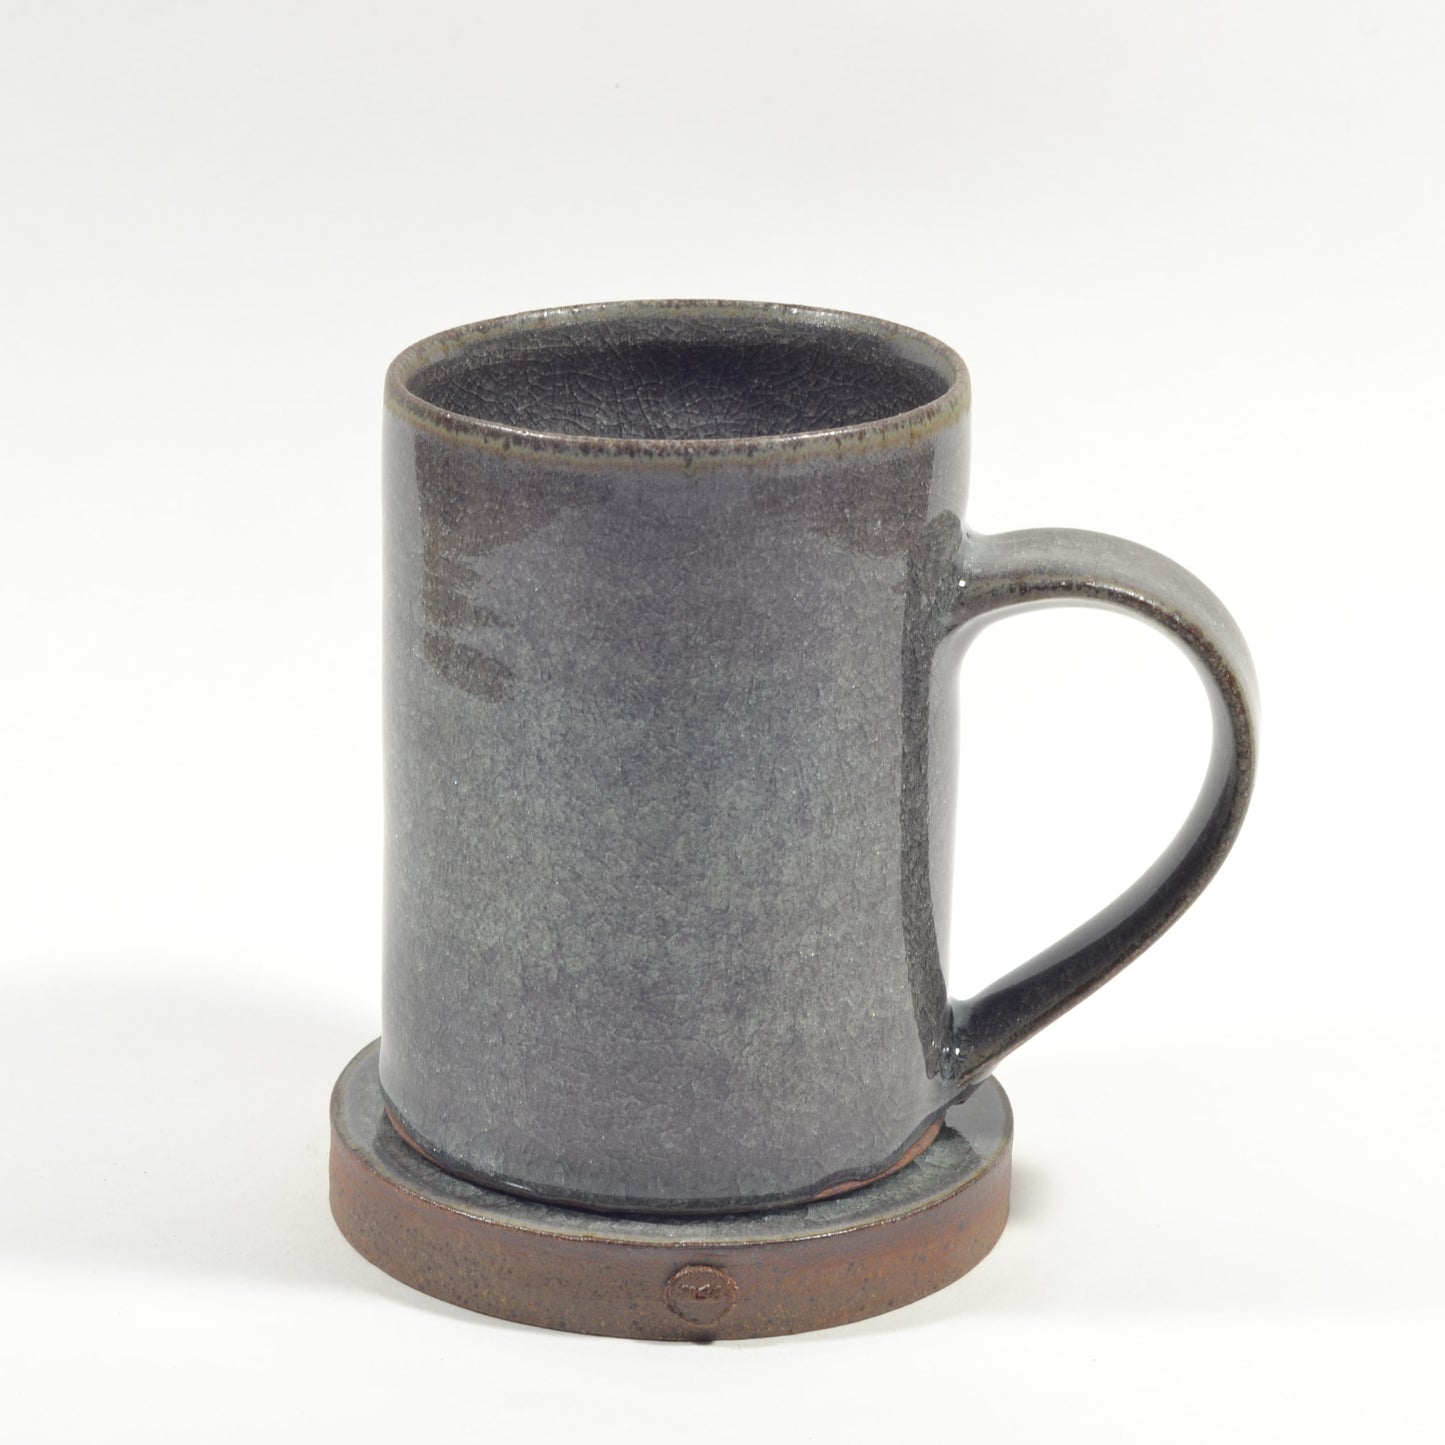 Mike Scown: Ceramic Mug